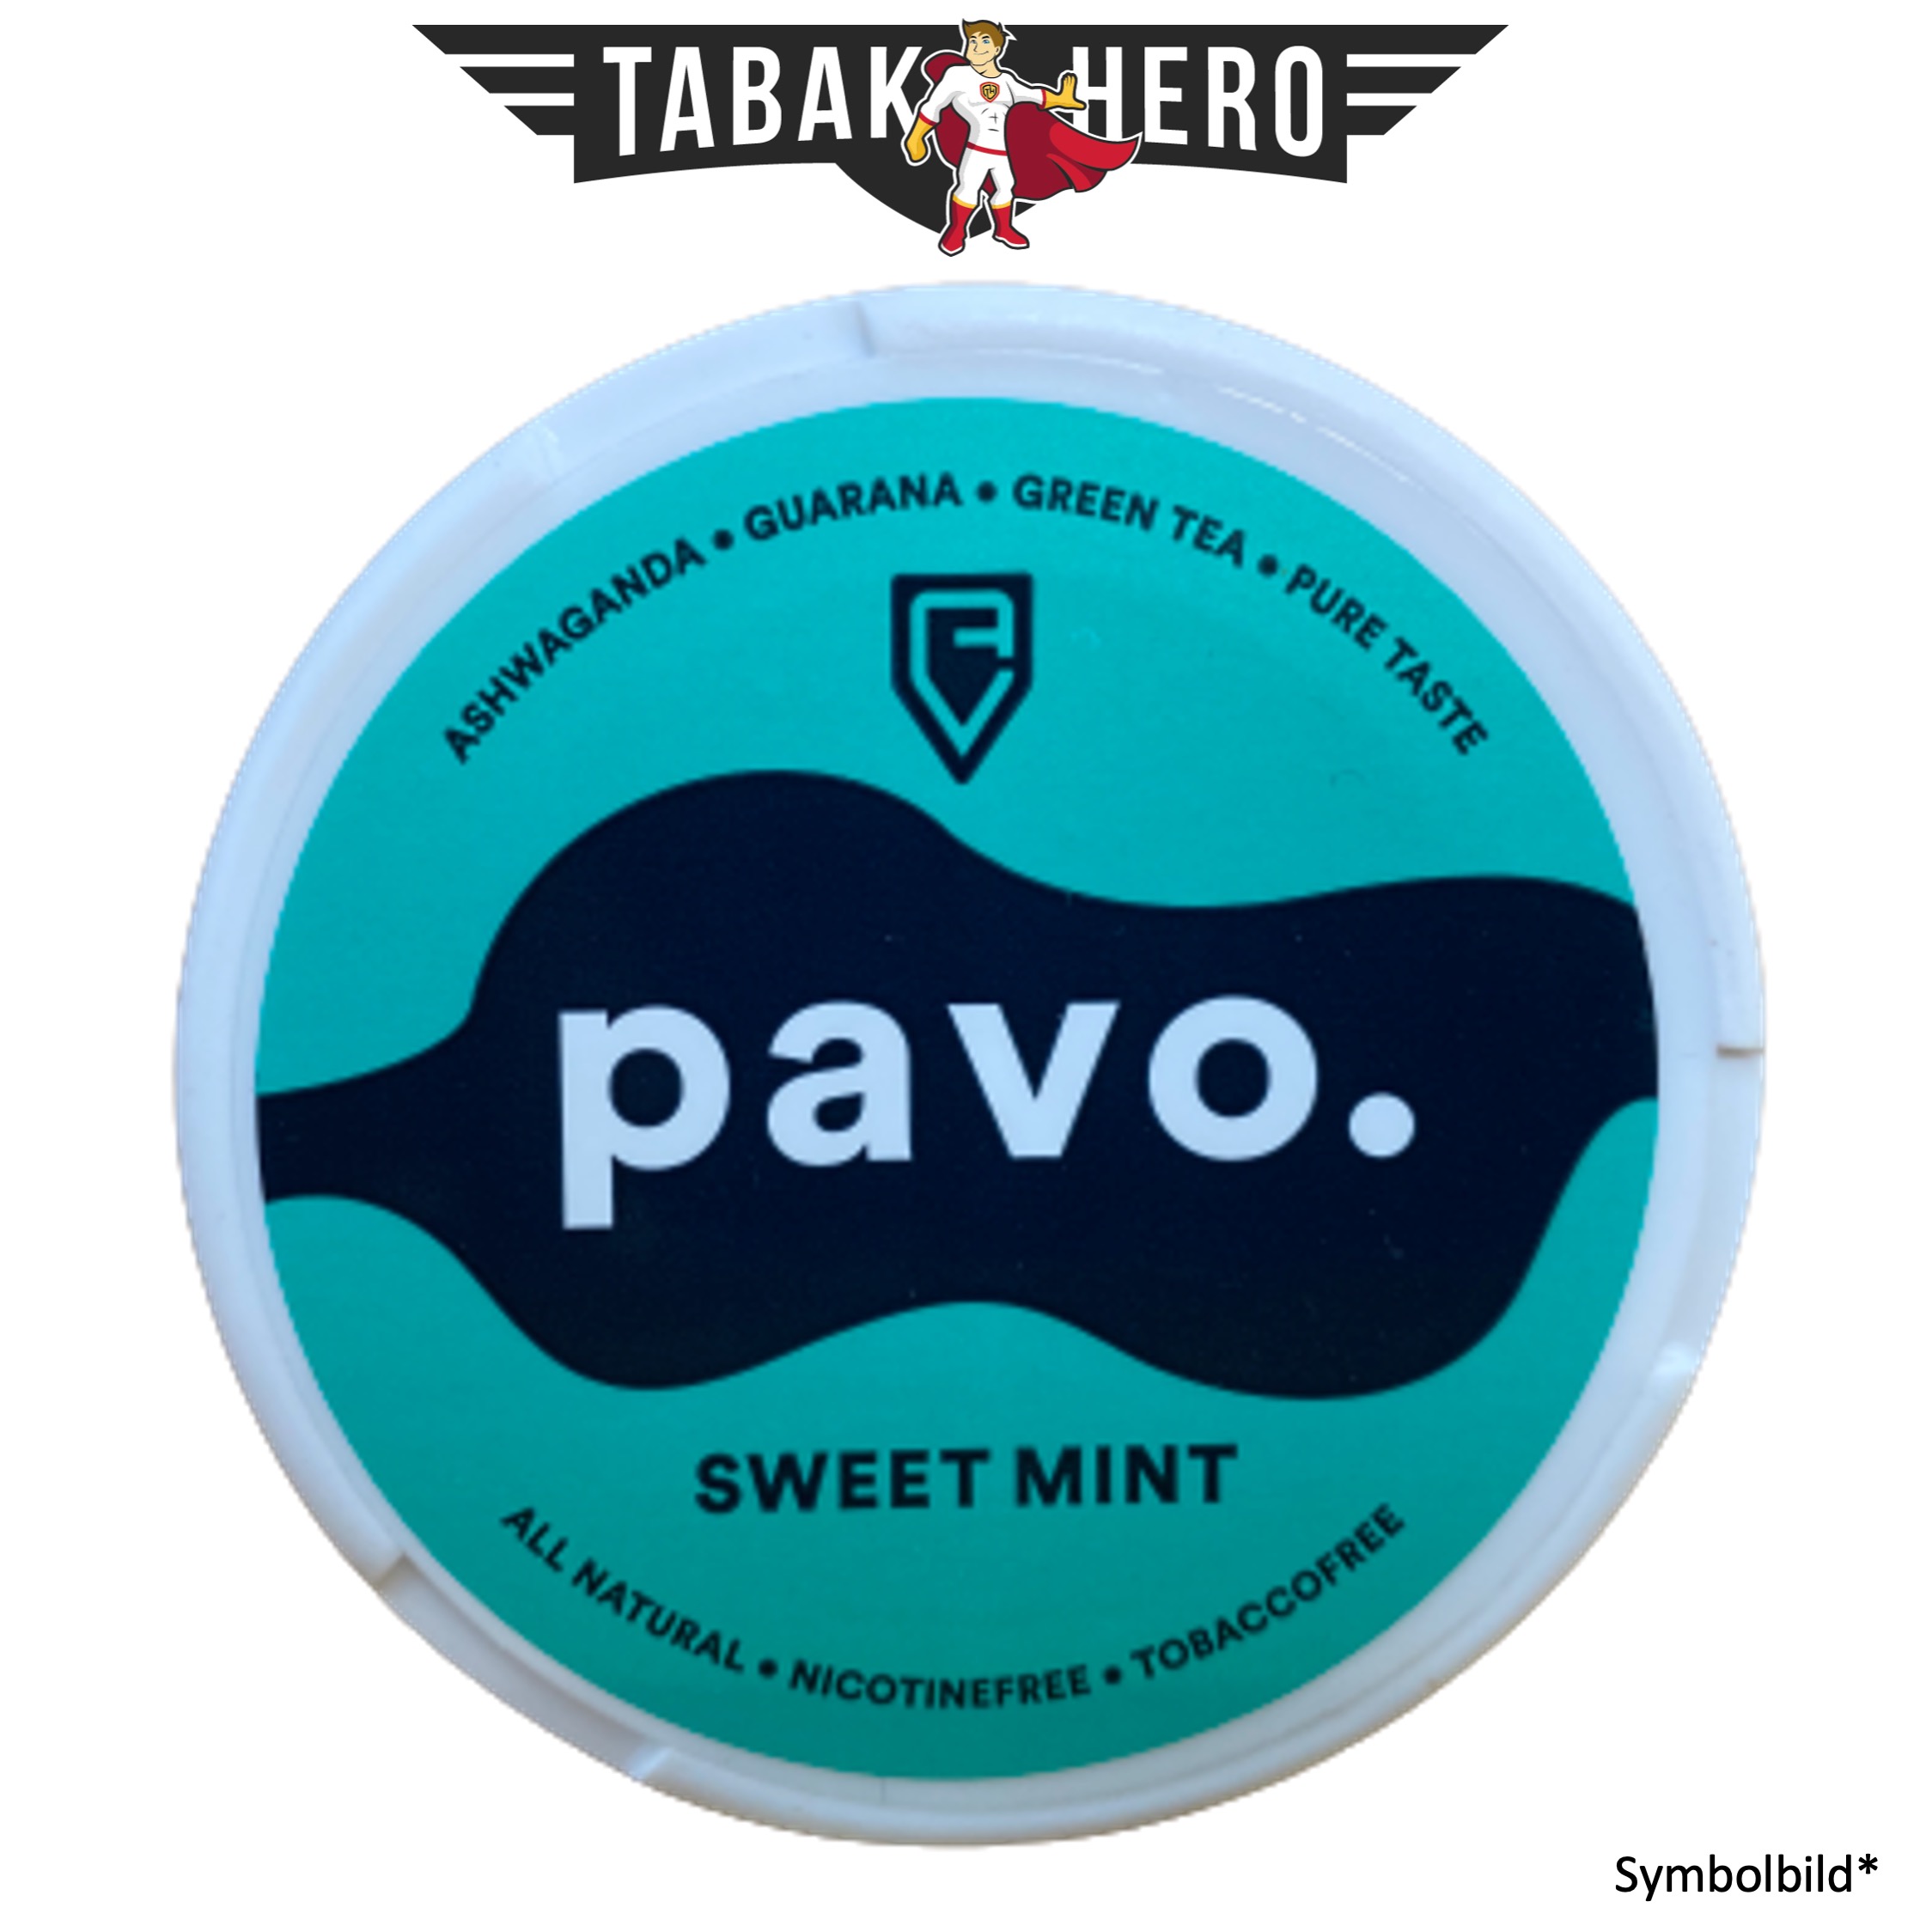 Pavo Sweet Mint Kautabak herbal pouches Nikotinfrei 12g